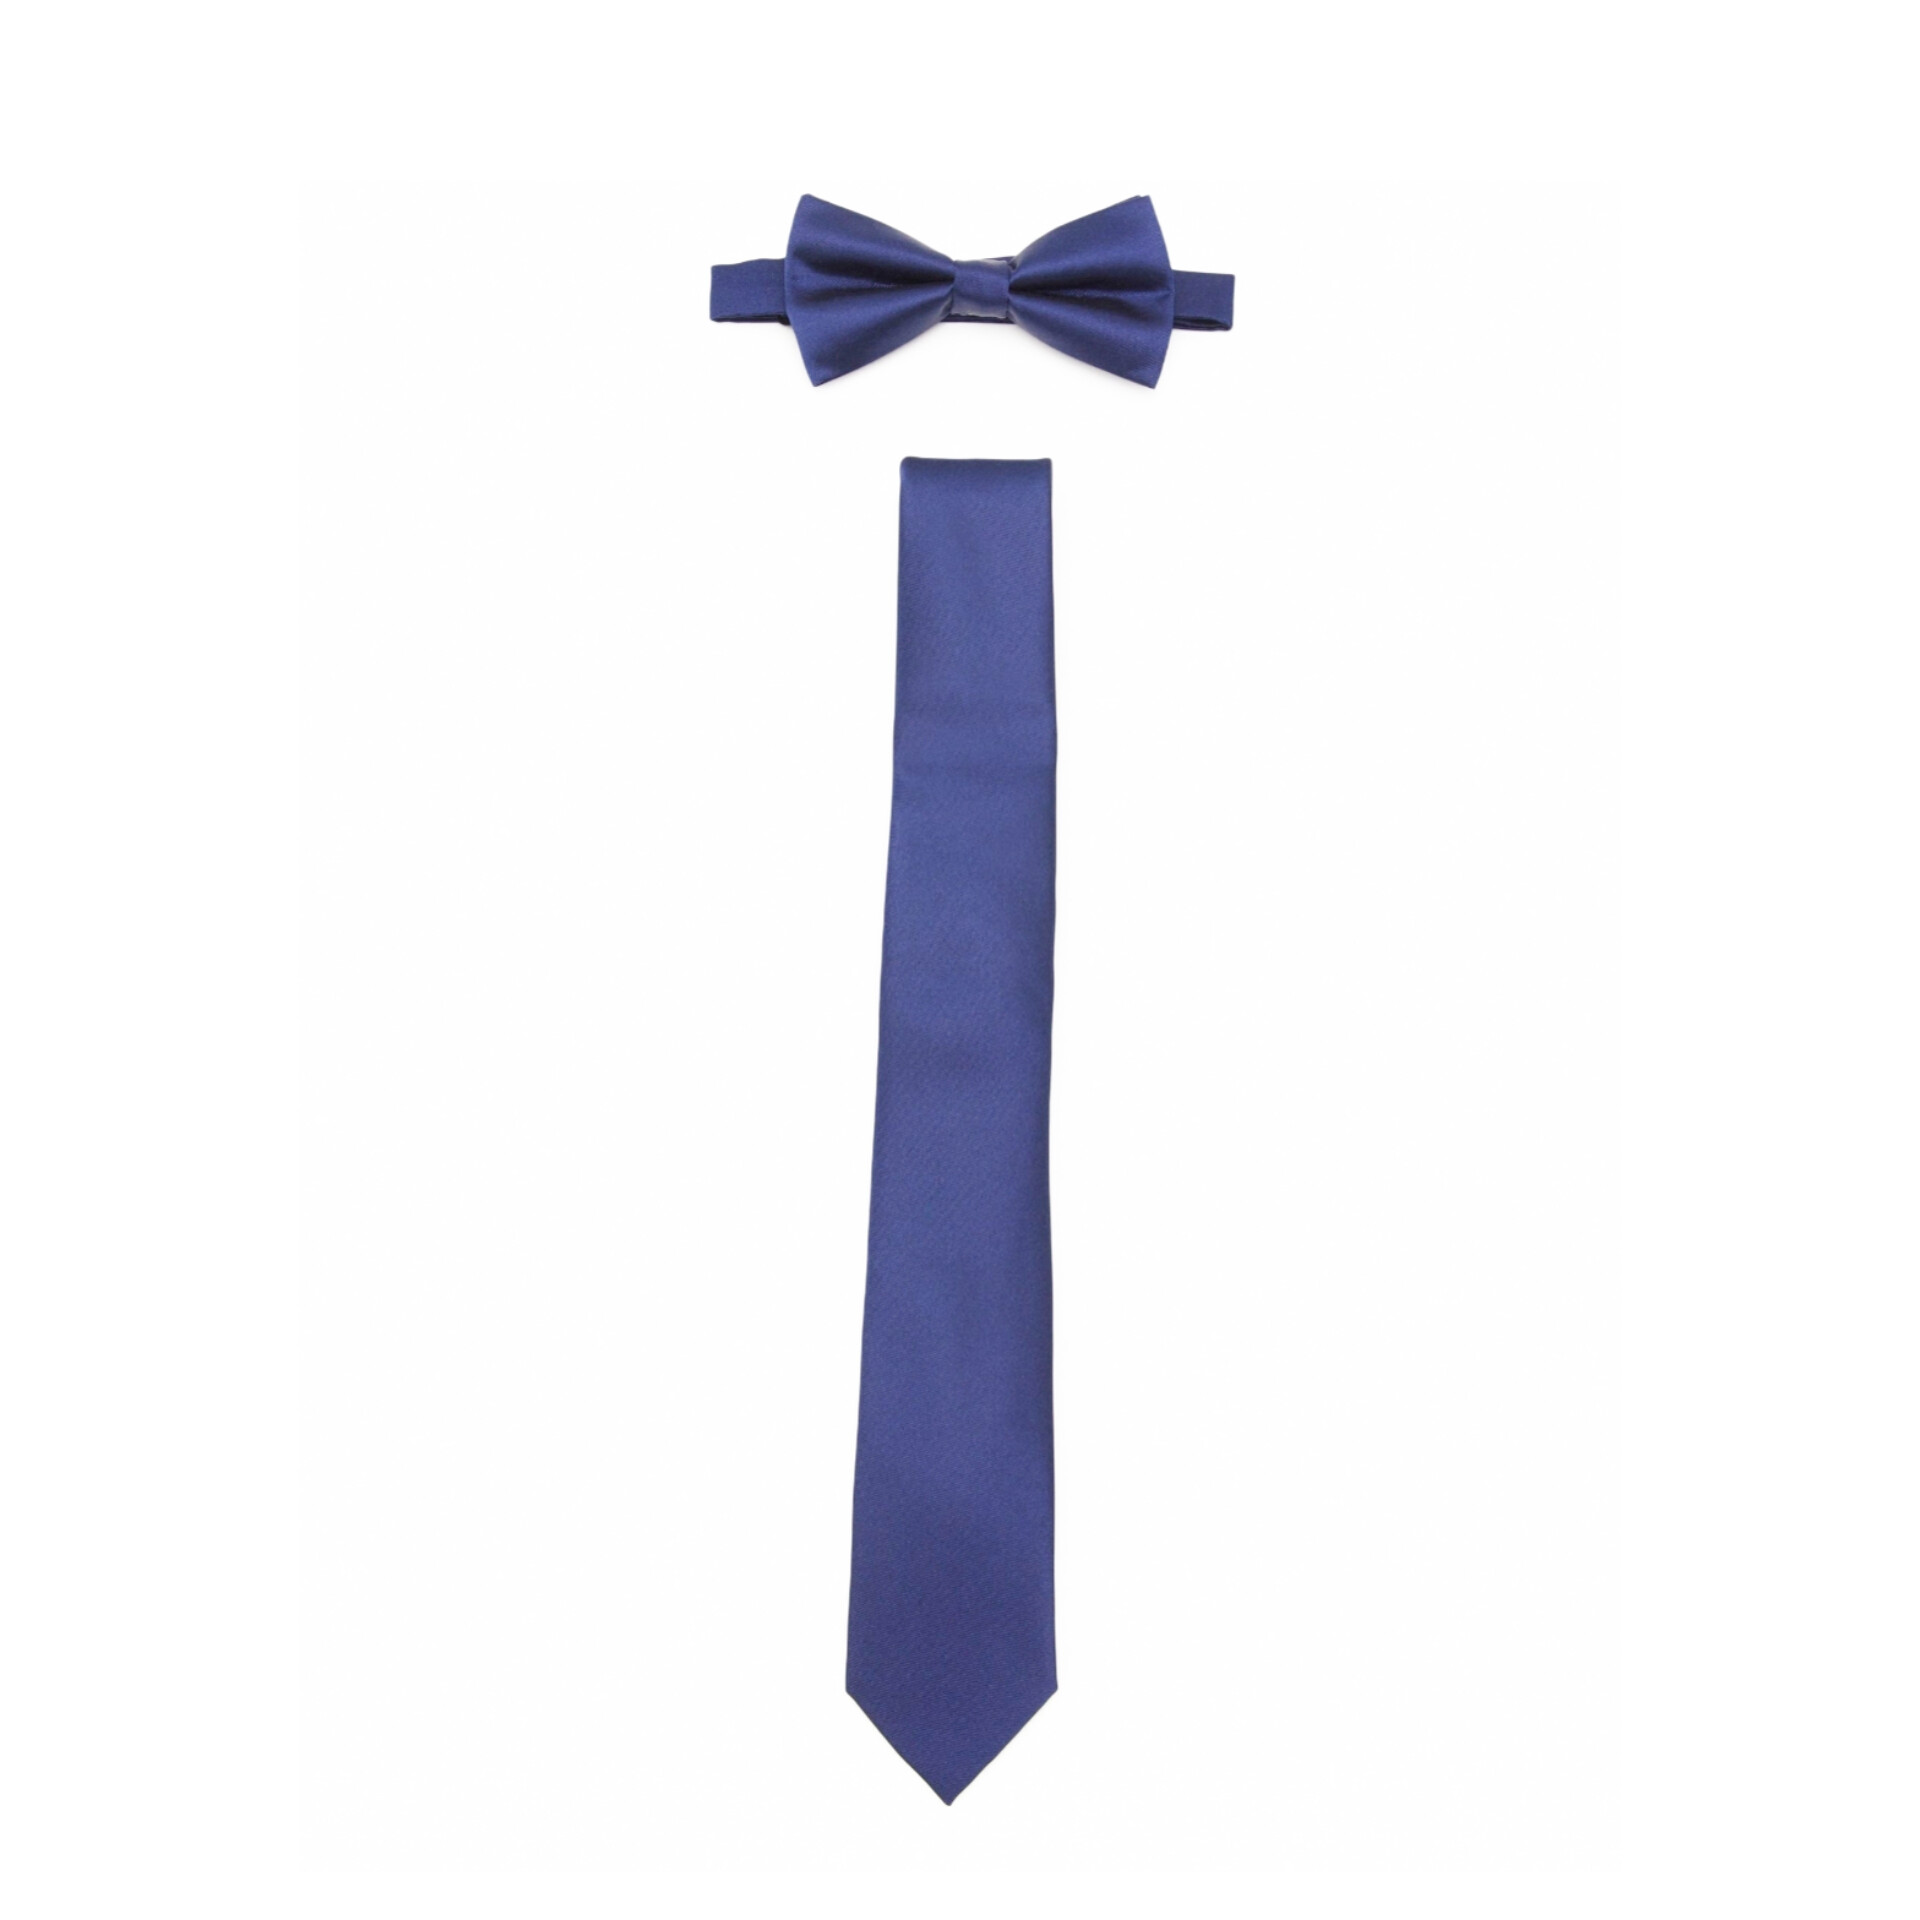 نکته خرید - قیمت روز ست کراوات و پاپیون مردانه پیر وان مدل Set tie خرید